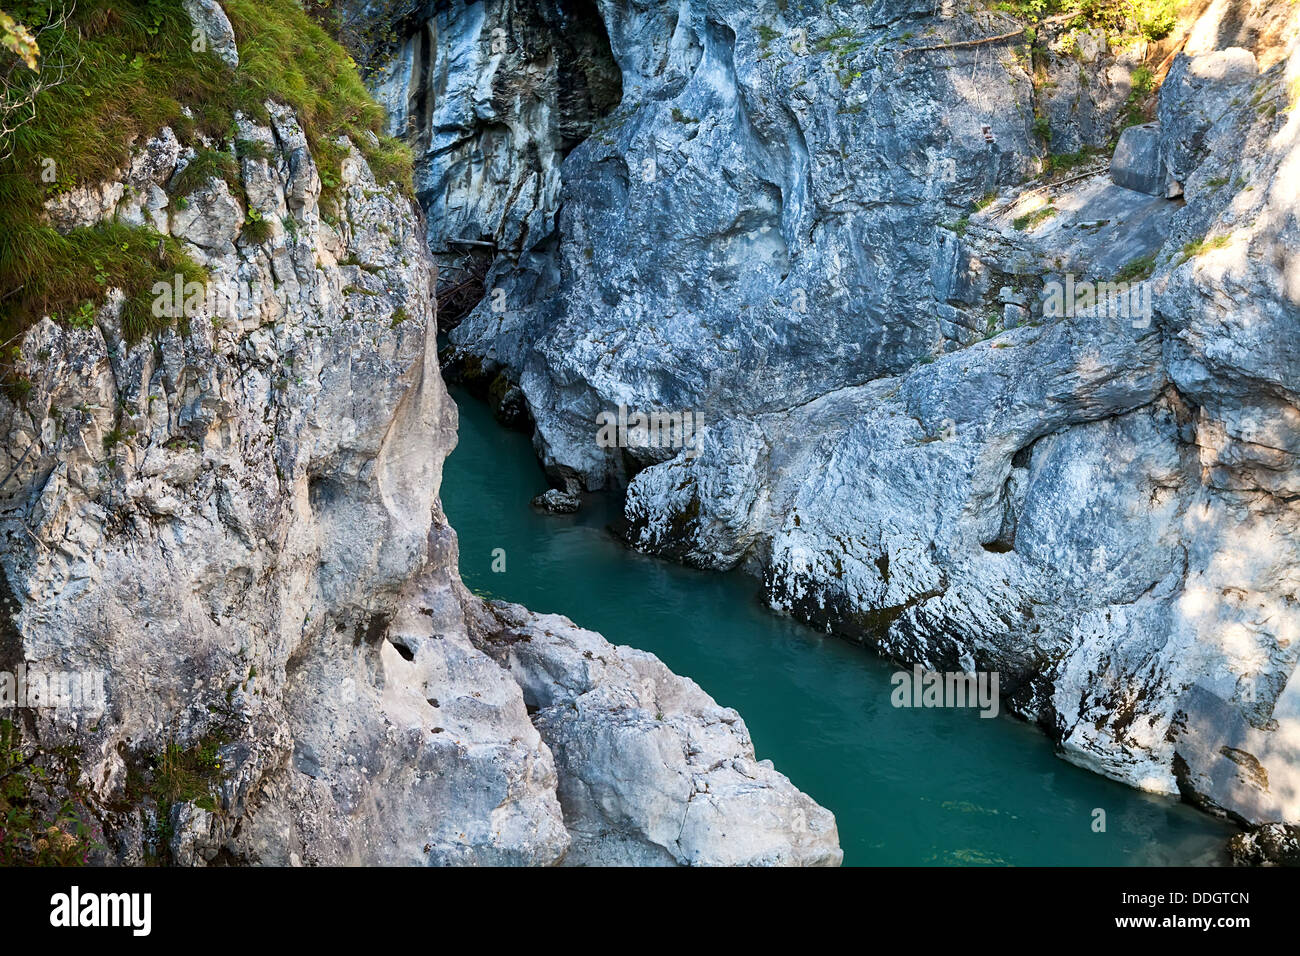 blue river between cliffs Stock Photo